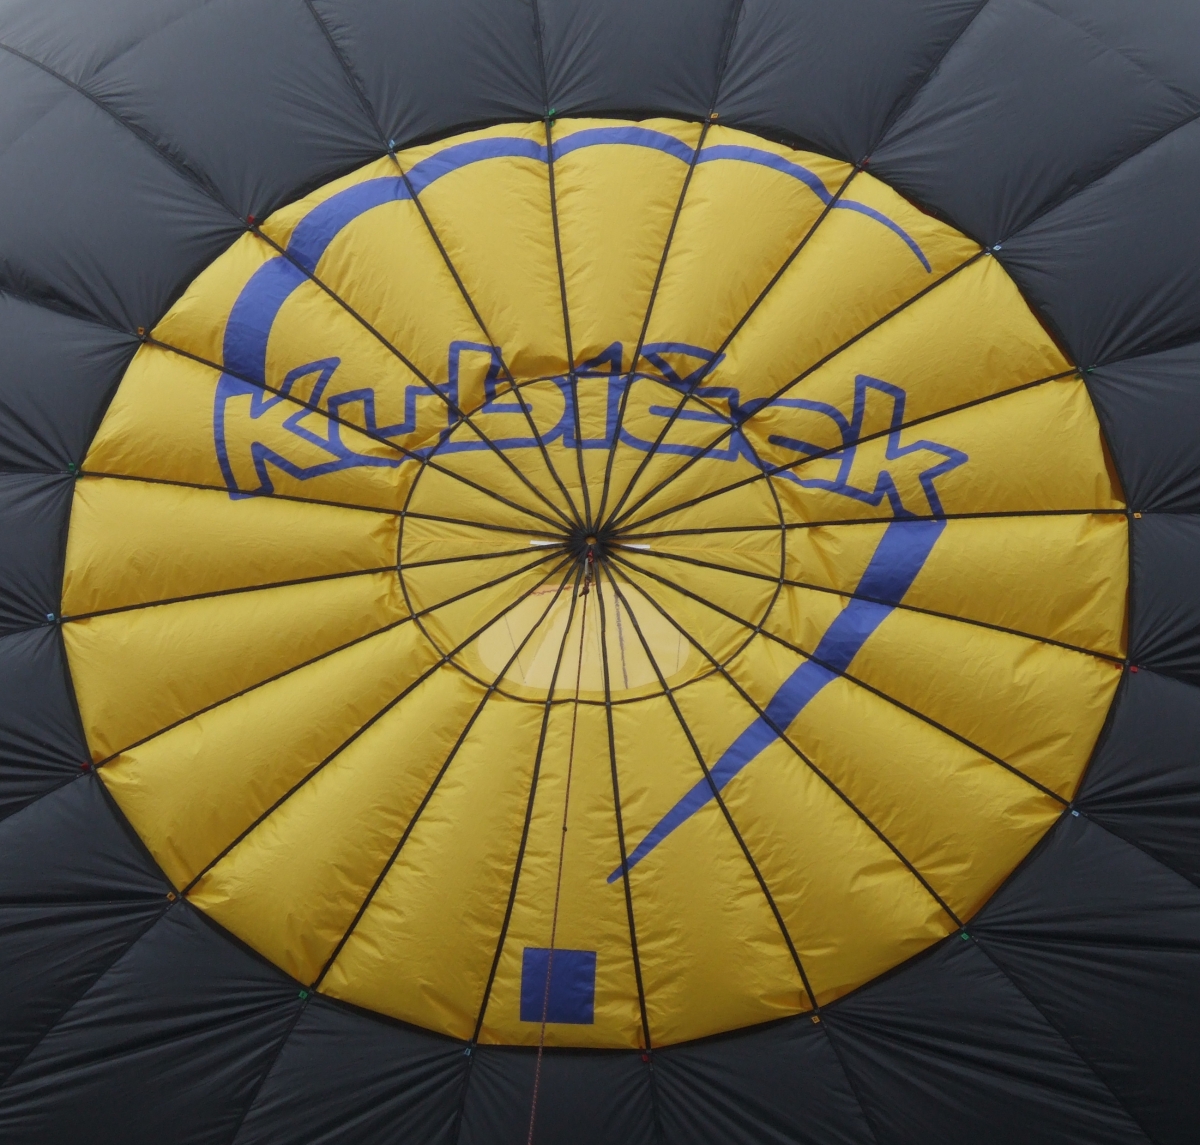 Fixed parachute